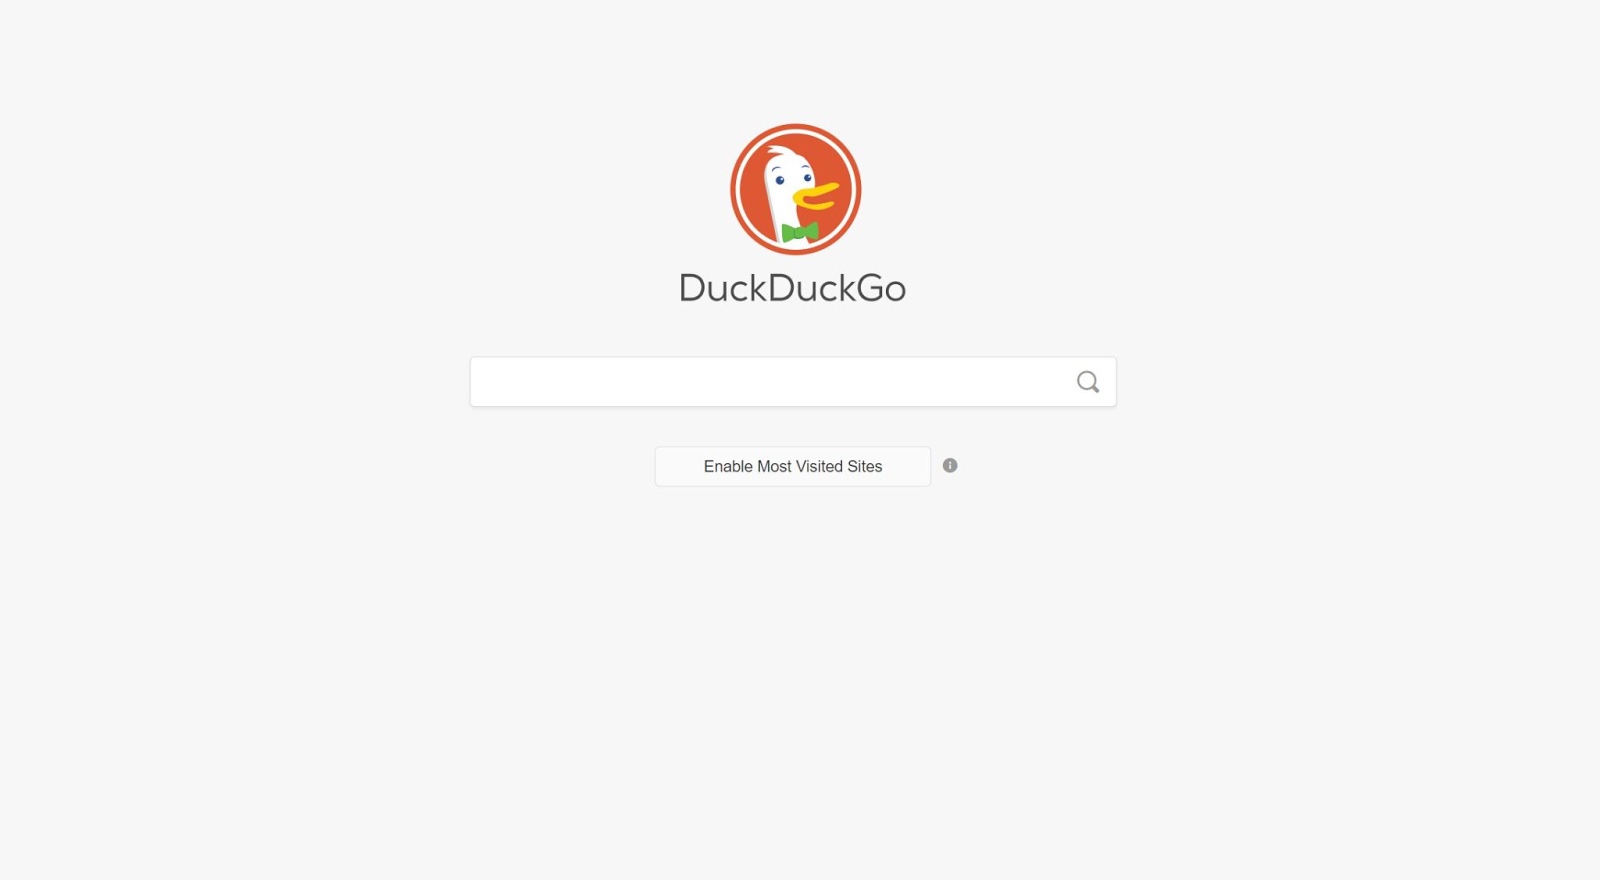 Personaliza tu experiencia en DuckDuckGo y permite que muestre tus sitios más visitado.